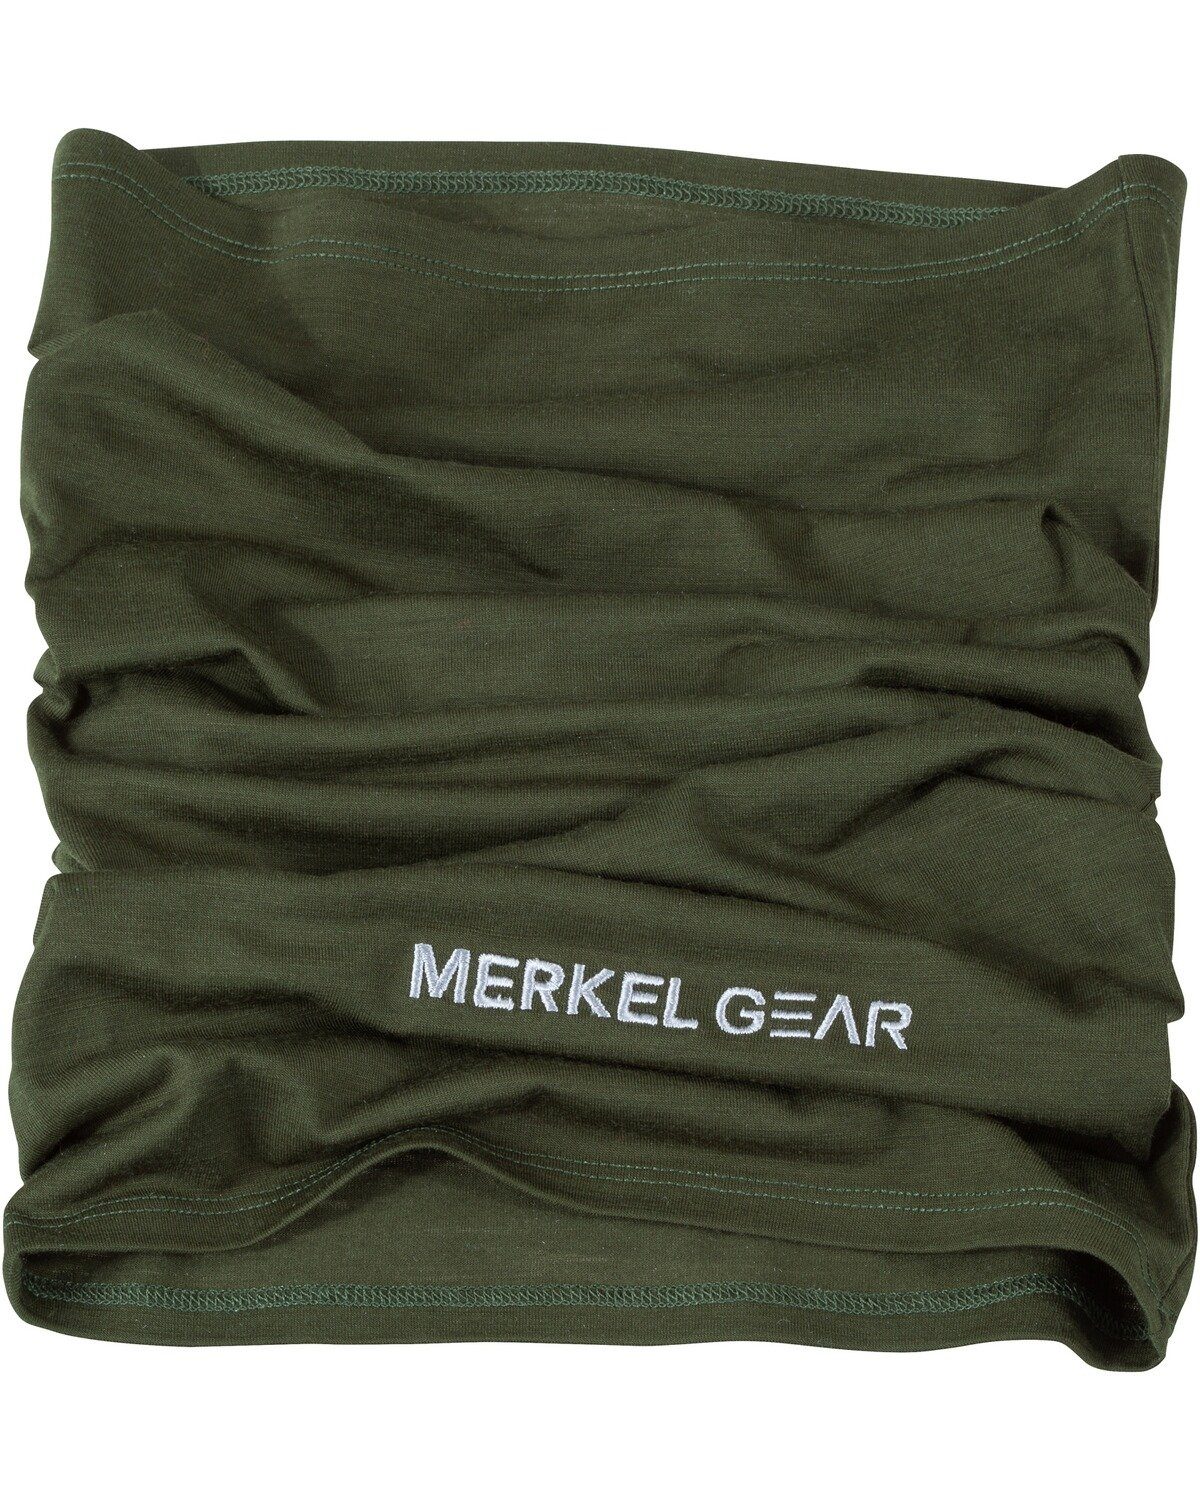 Modeschal Röhrenschal Merkel Gear